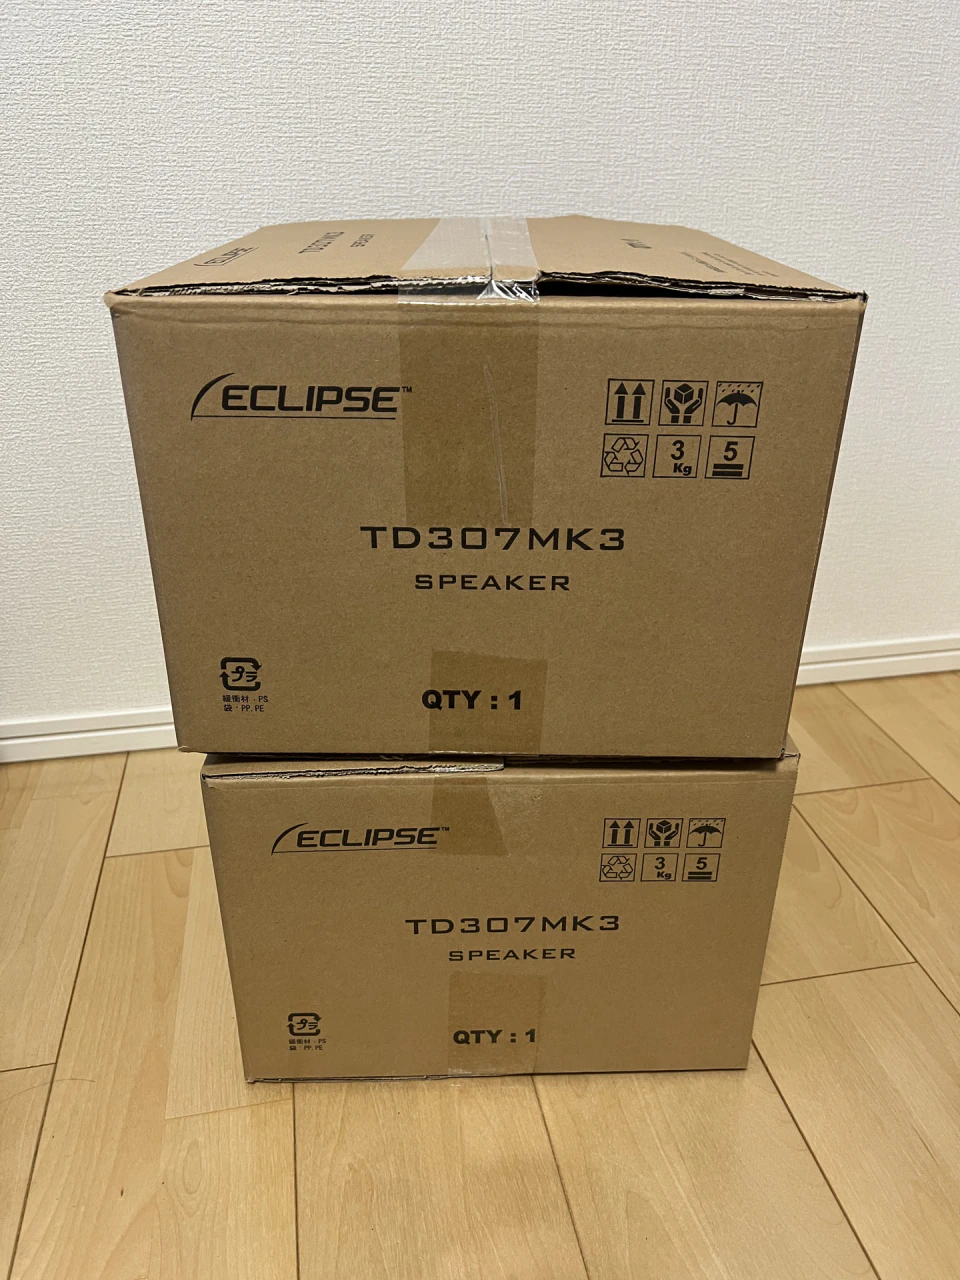 タイムドメインスピーカー TD307MK3 を購入 | hayase.tvブログ